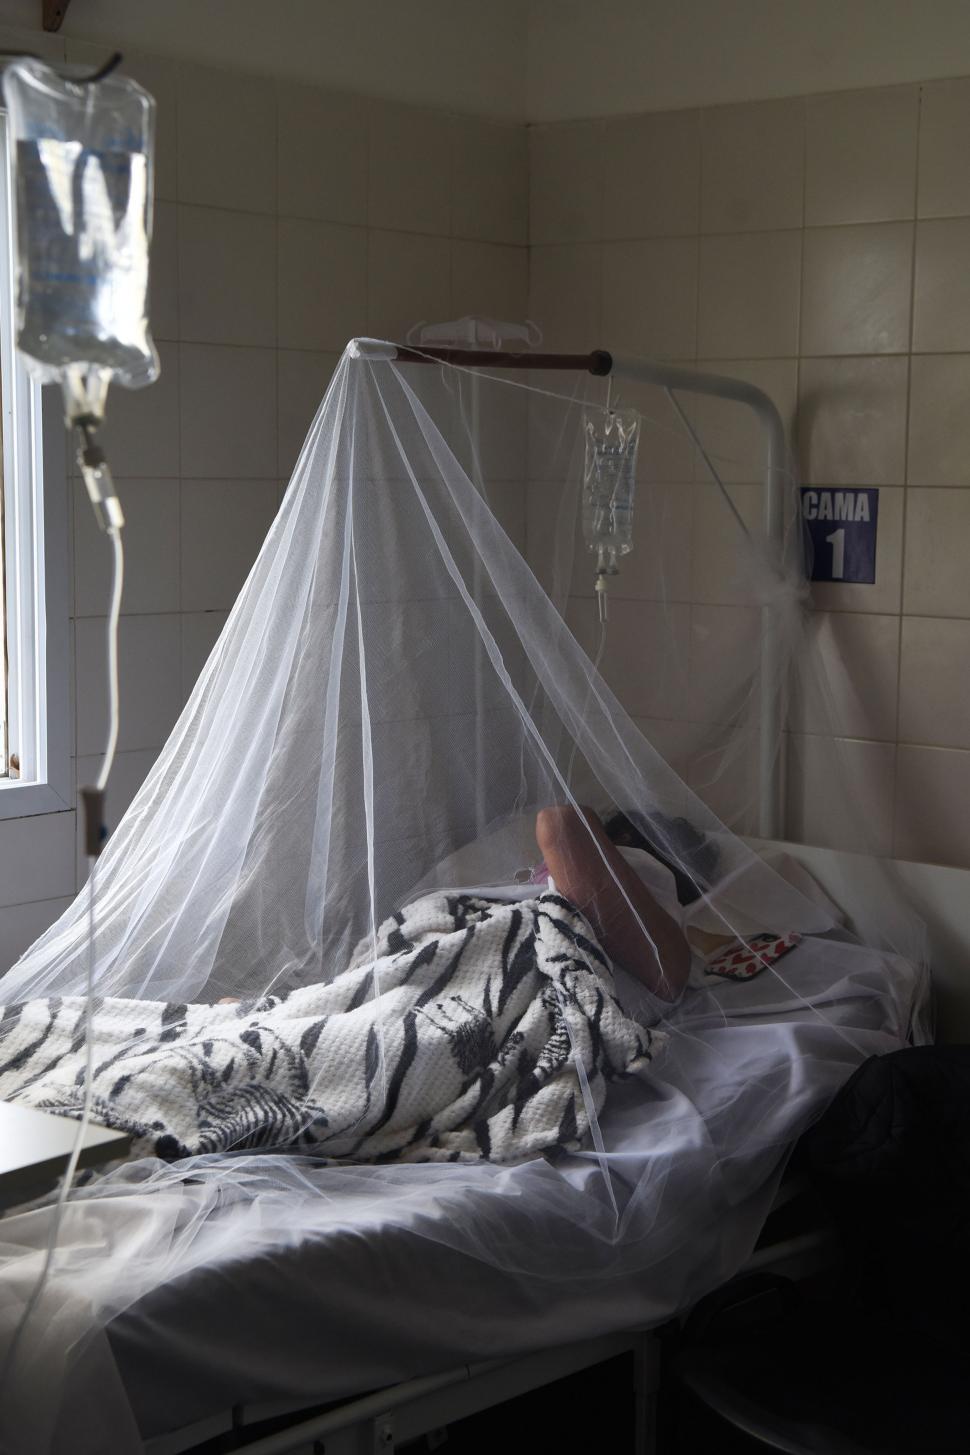 EN OBSERVACIÓN. Unos 100 pacientes se encuentran internados porque presentan signos de alarma de dengue. LA GACETA / FOTOs DE Analía Jaramillo y Osvaldo Ripoll